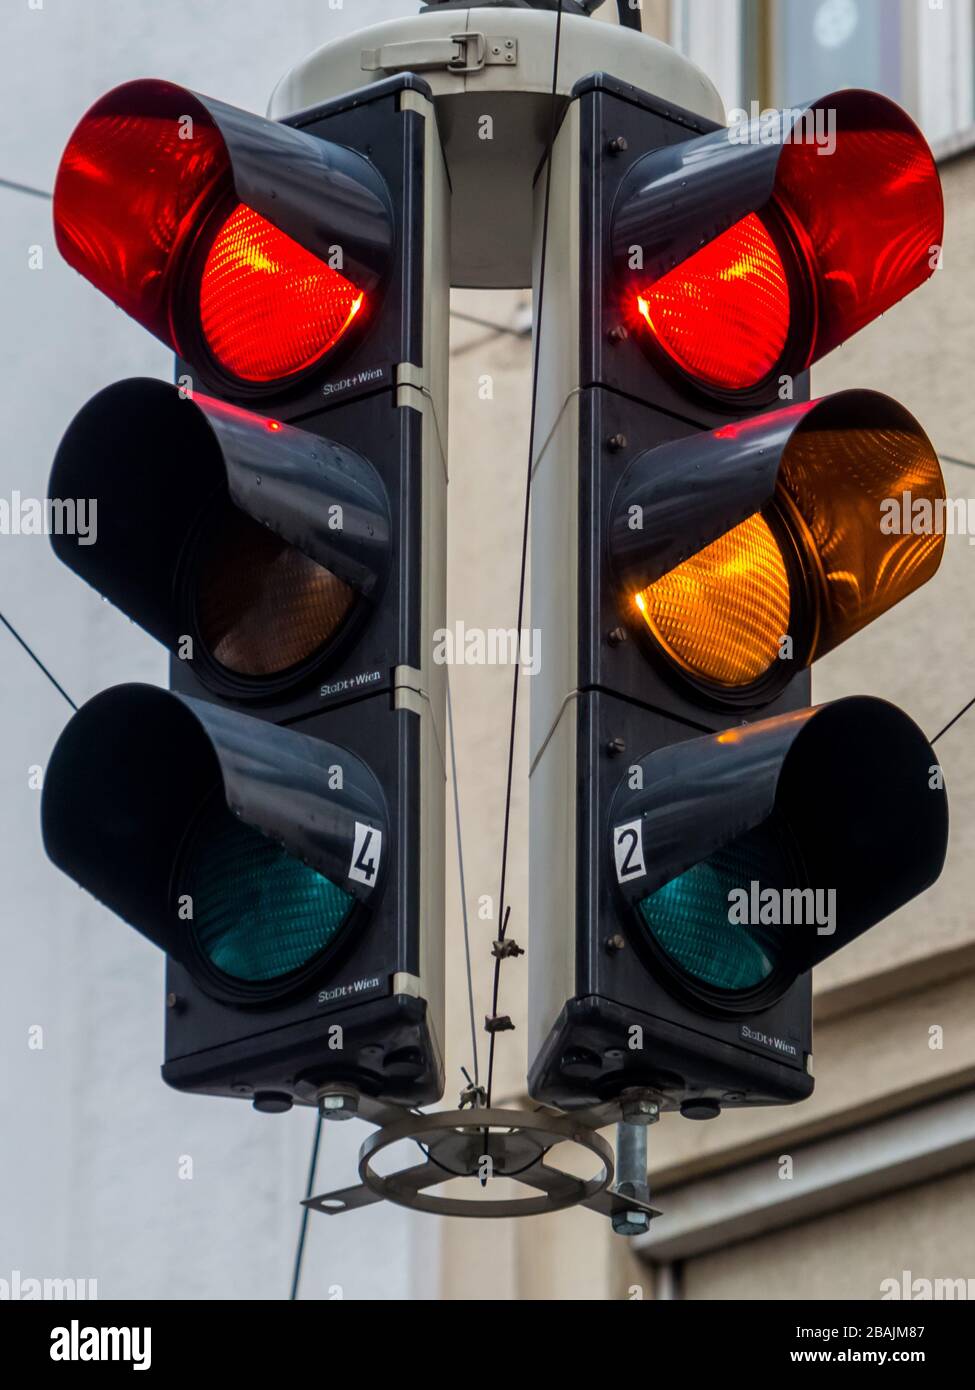 Verkehrsampel mit rotem und gelben oder orangem Licht. Stock Photo